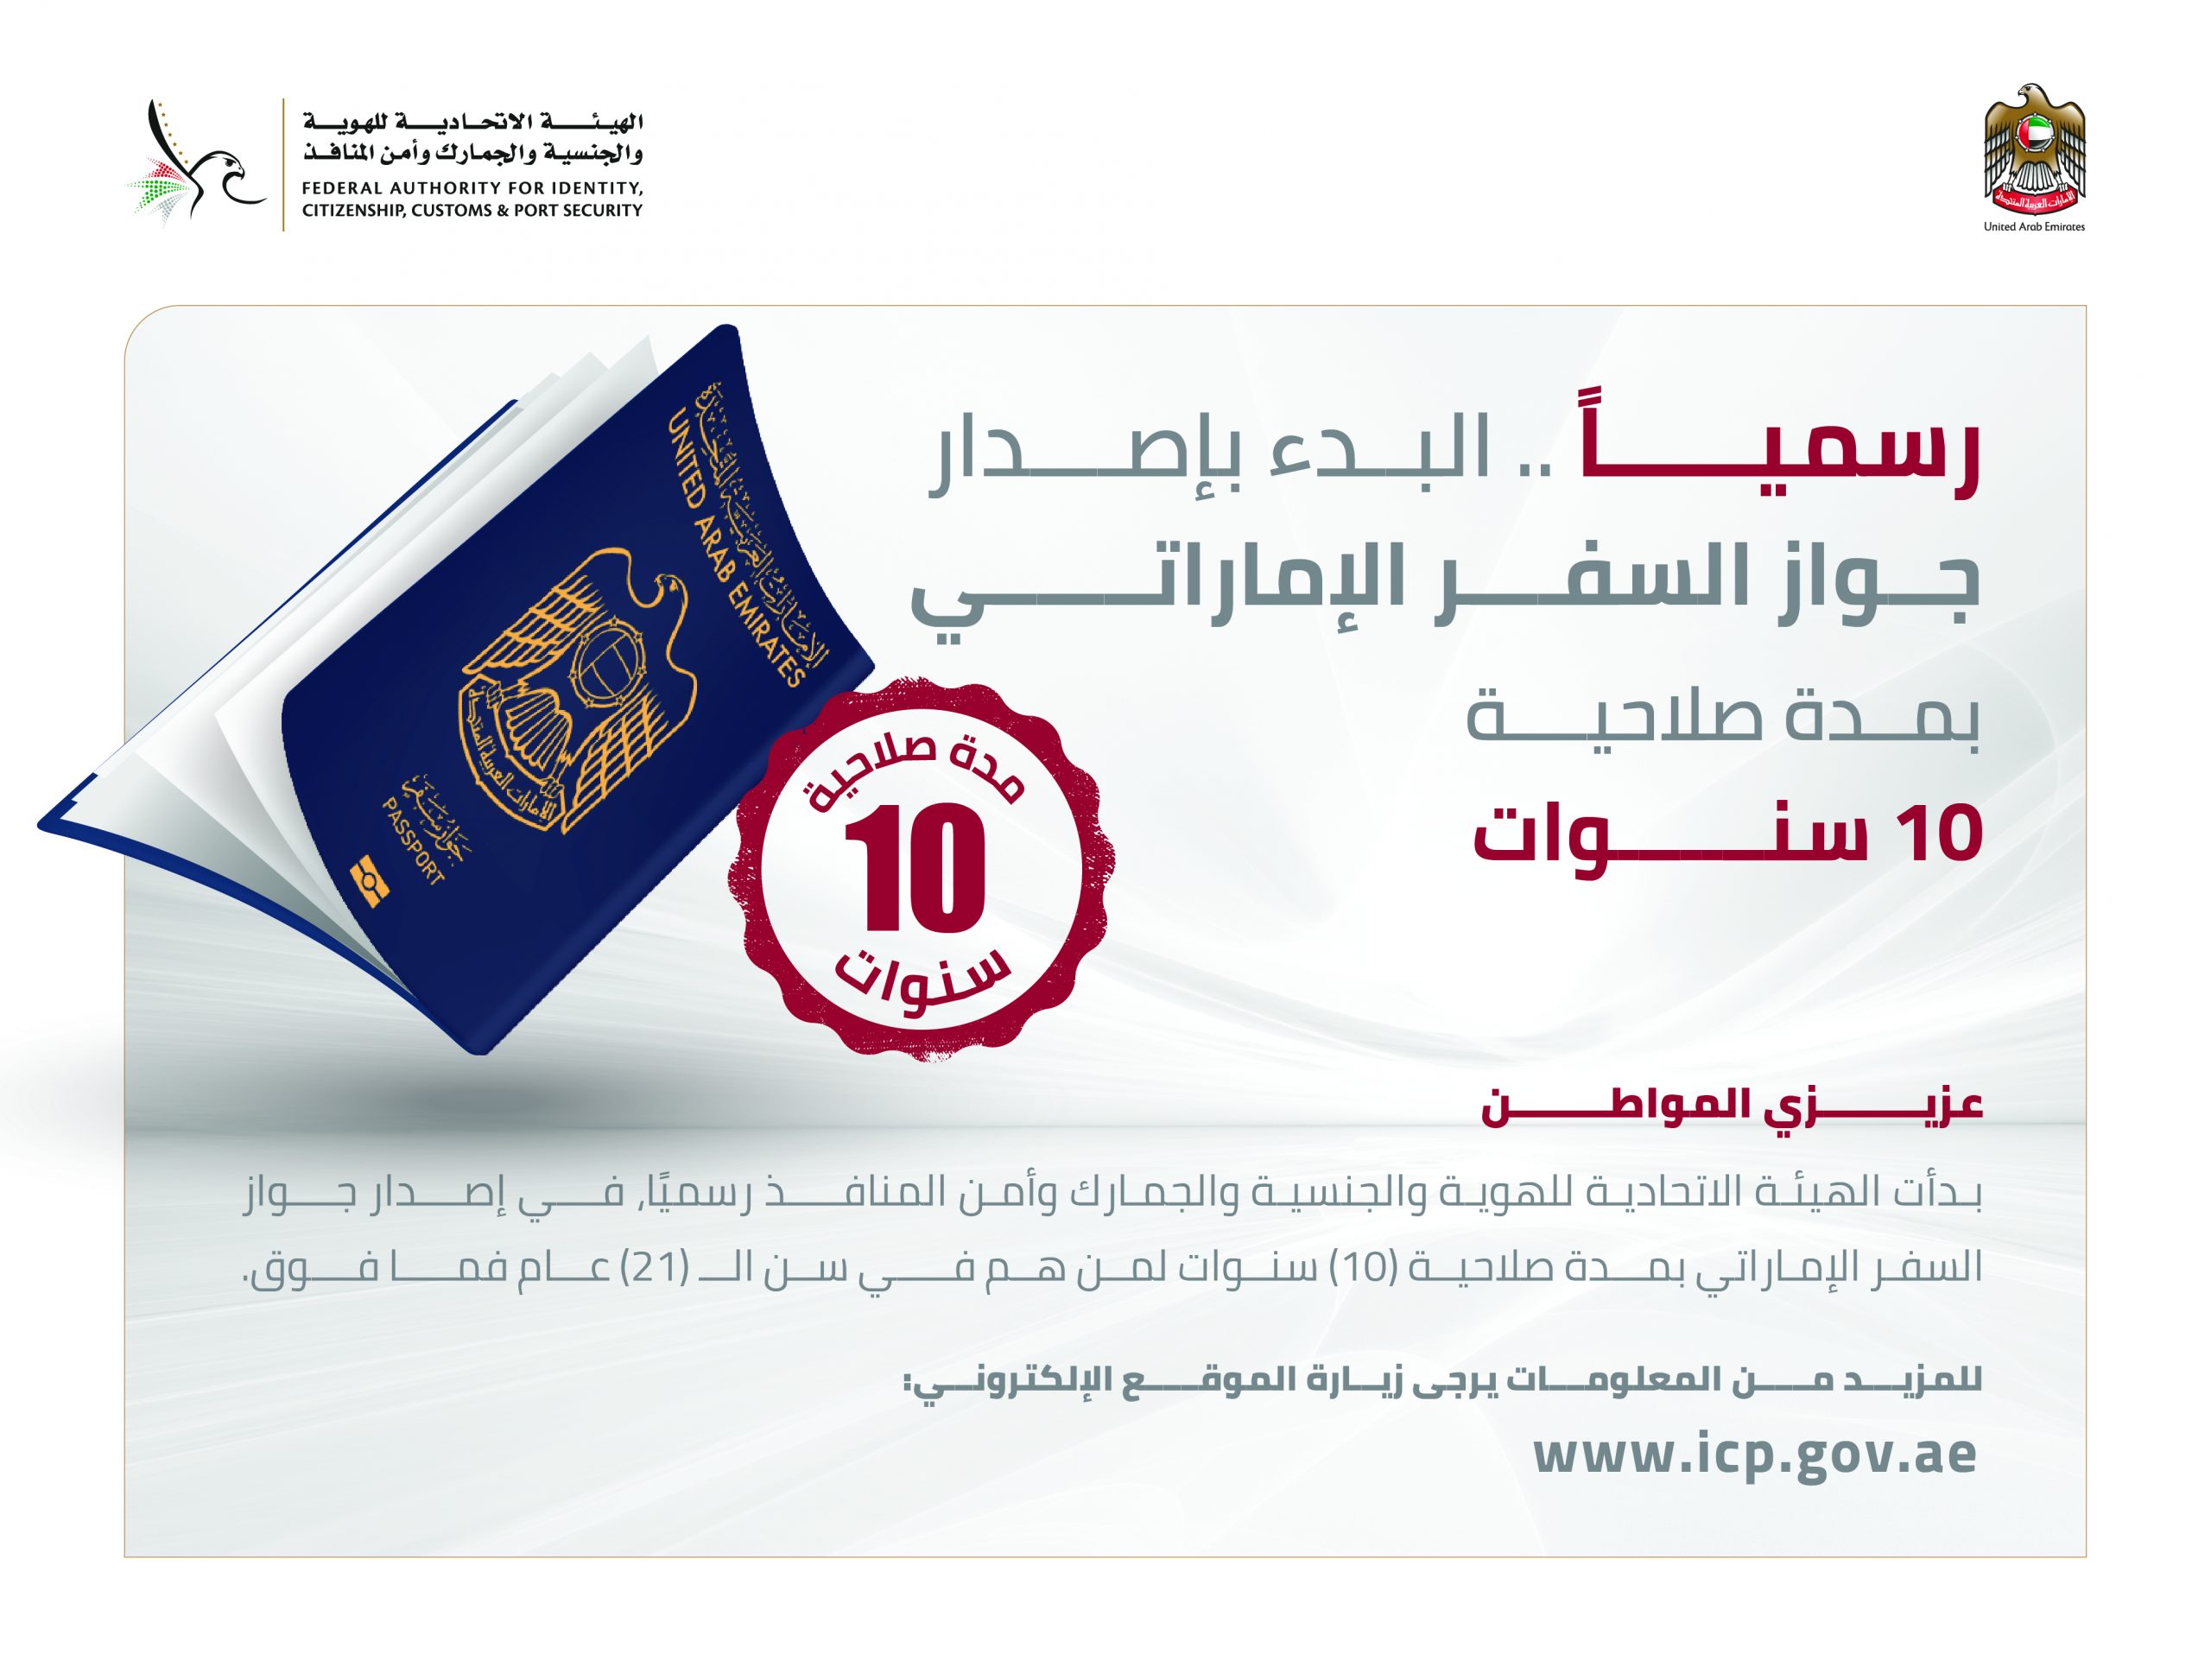 “الهوية والجنسية” تبدأ رسميًا إصدار جواز السفر الإماراتي بمدة صلاحية 10 سنوات